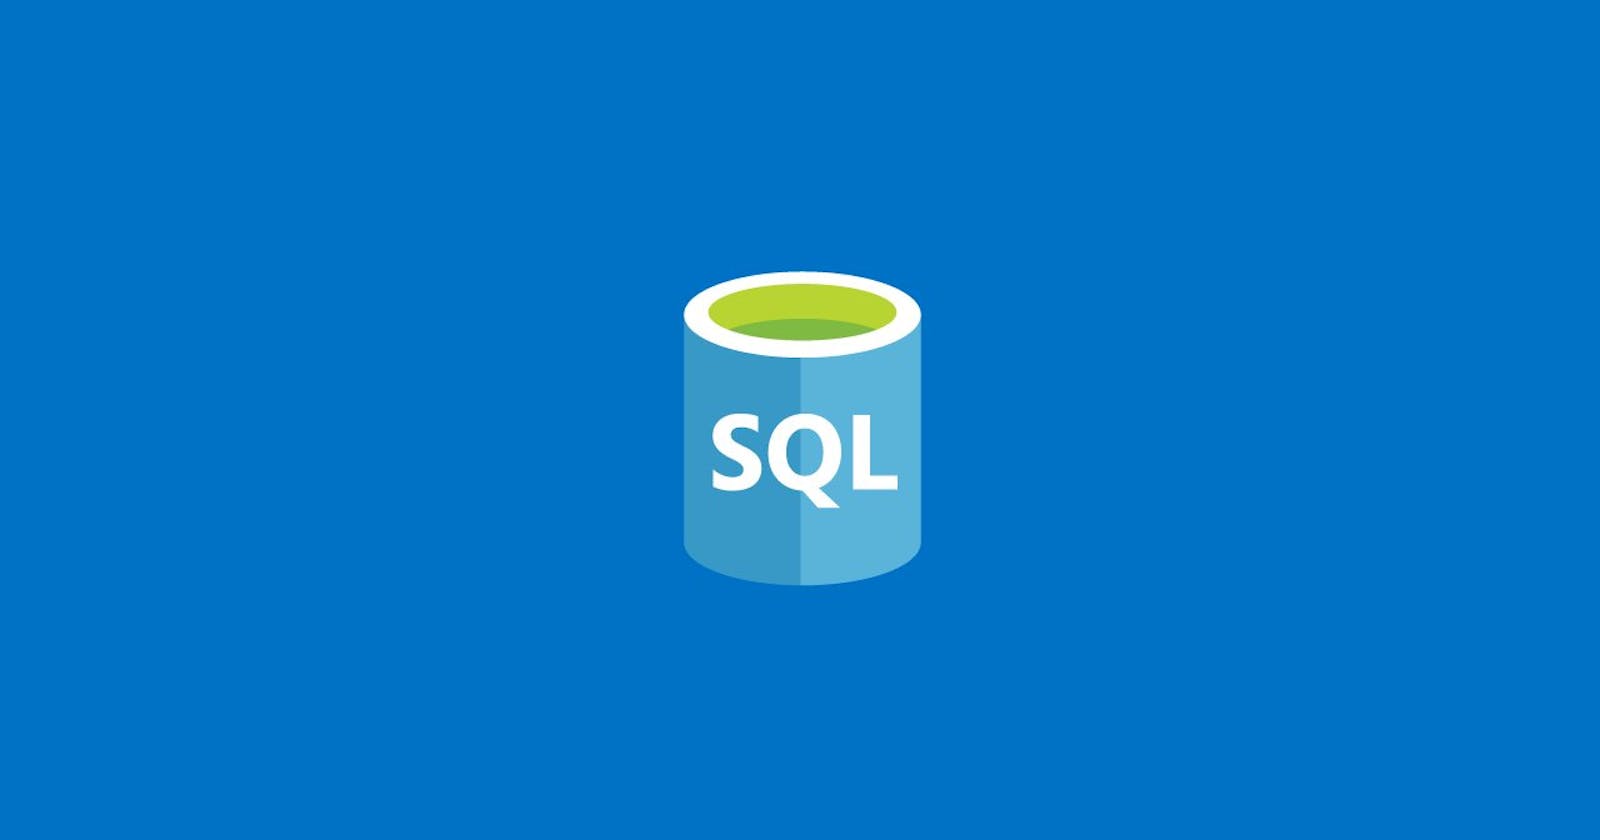 Mastering SQL Basics